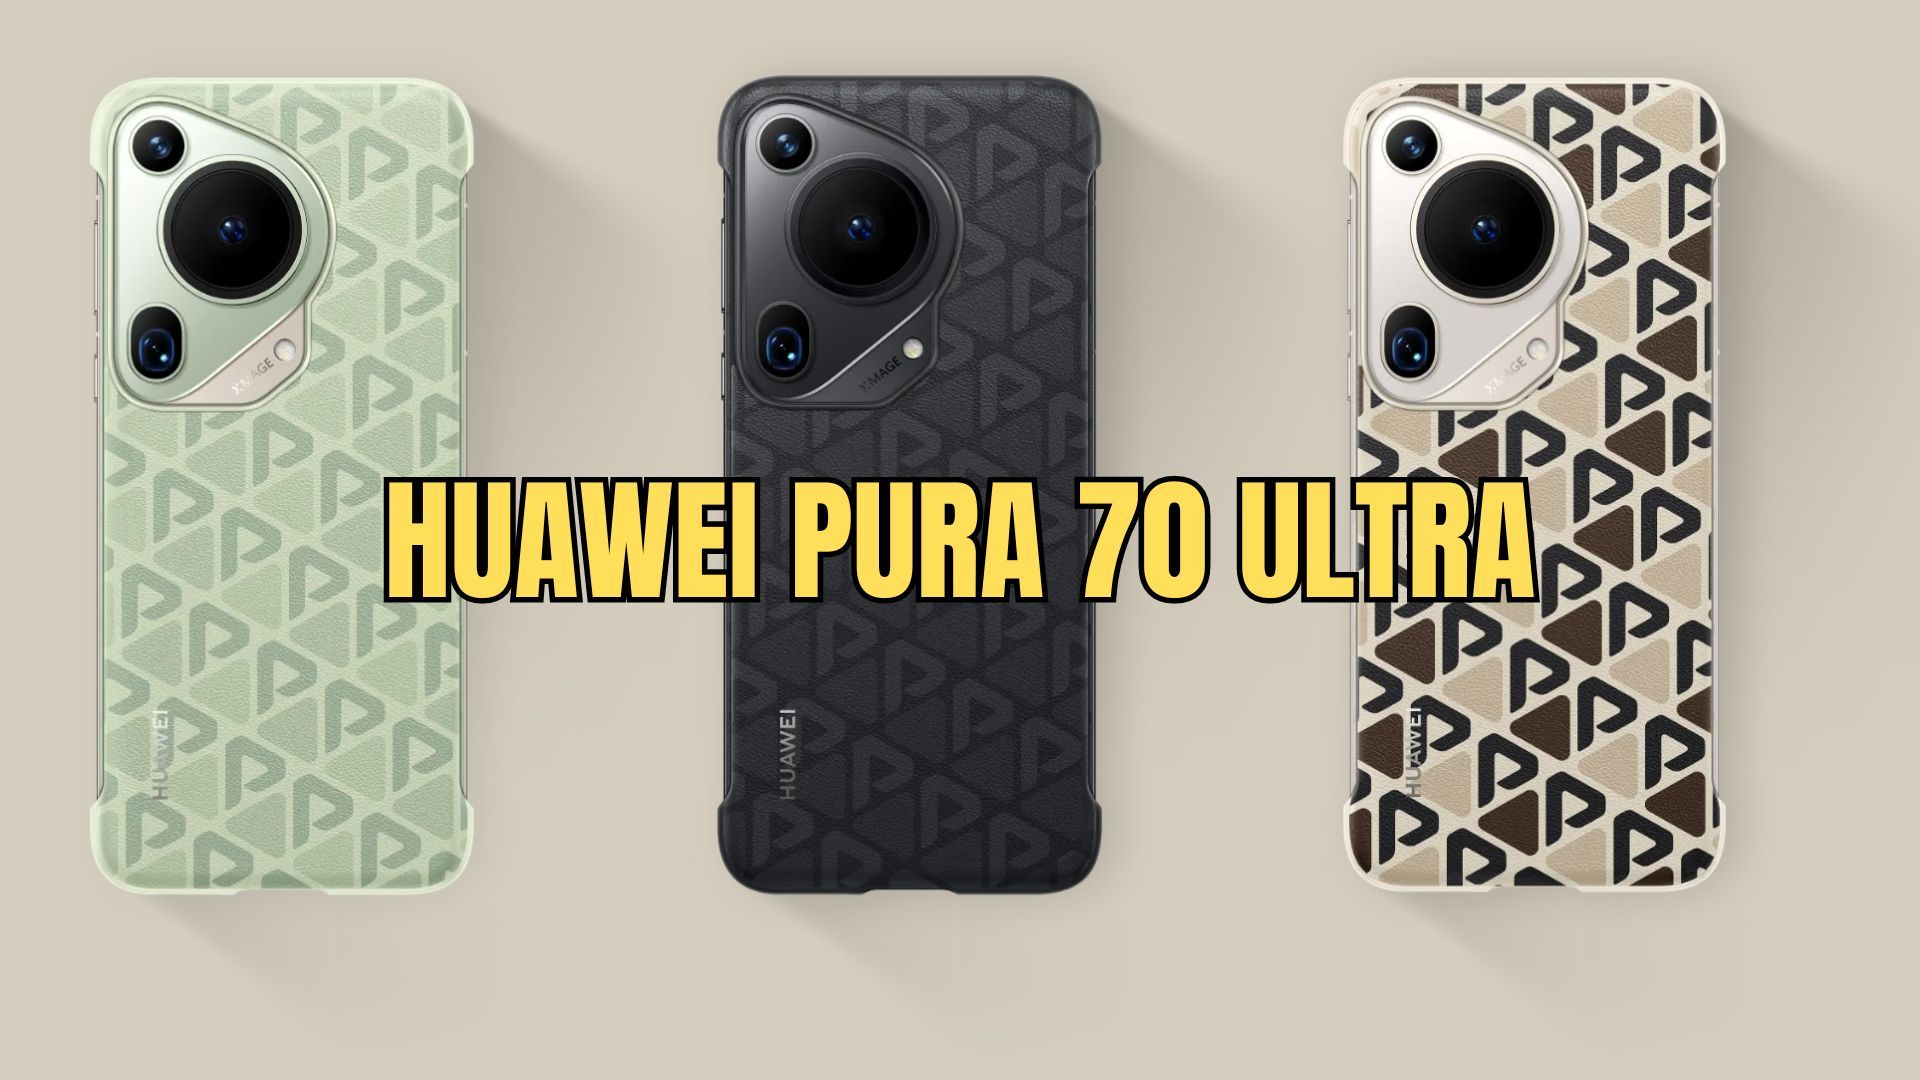 Huawei Pura 70 Ultra: Ponsel Flagship Terbaru dengan Teknologi Terdepan